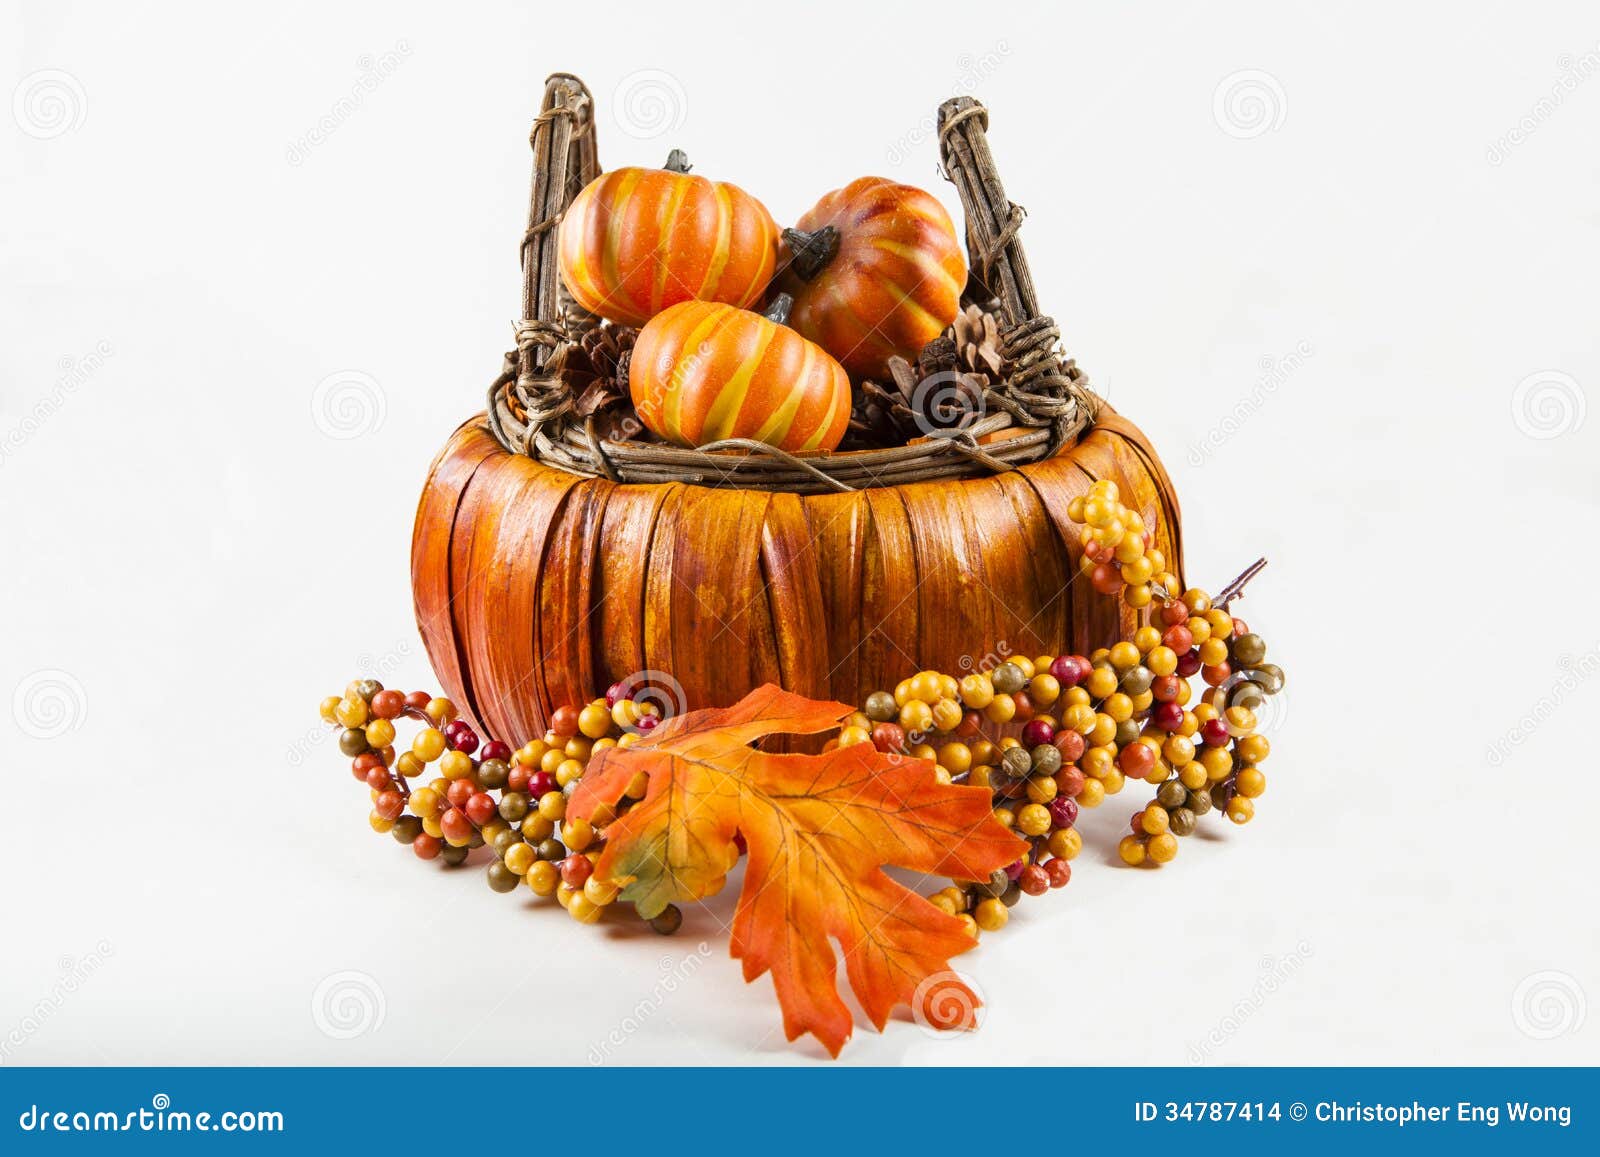 Fall Harvest Basket stock photo. Image of pumpkin, basket - 34787414